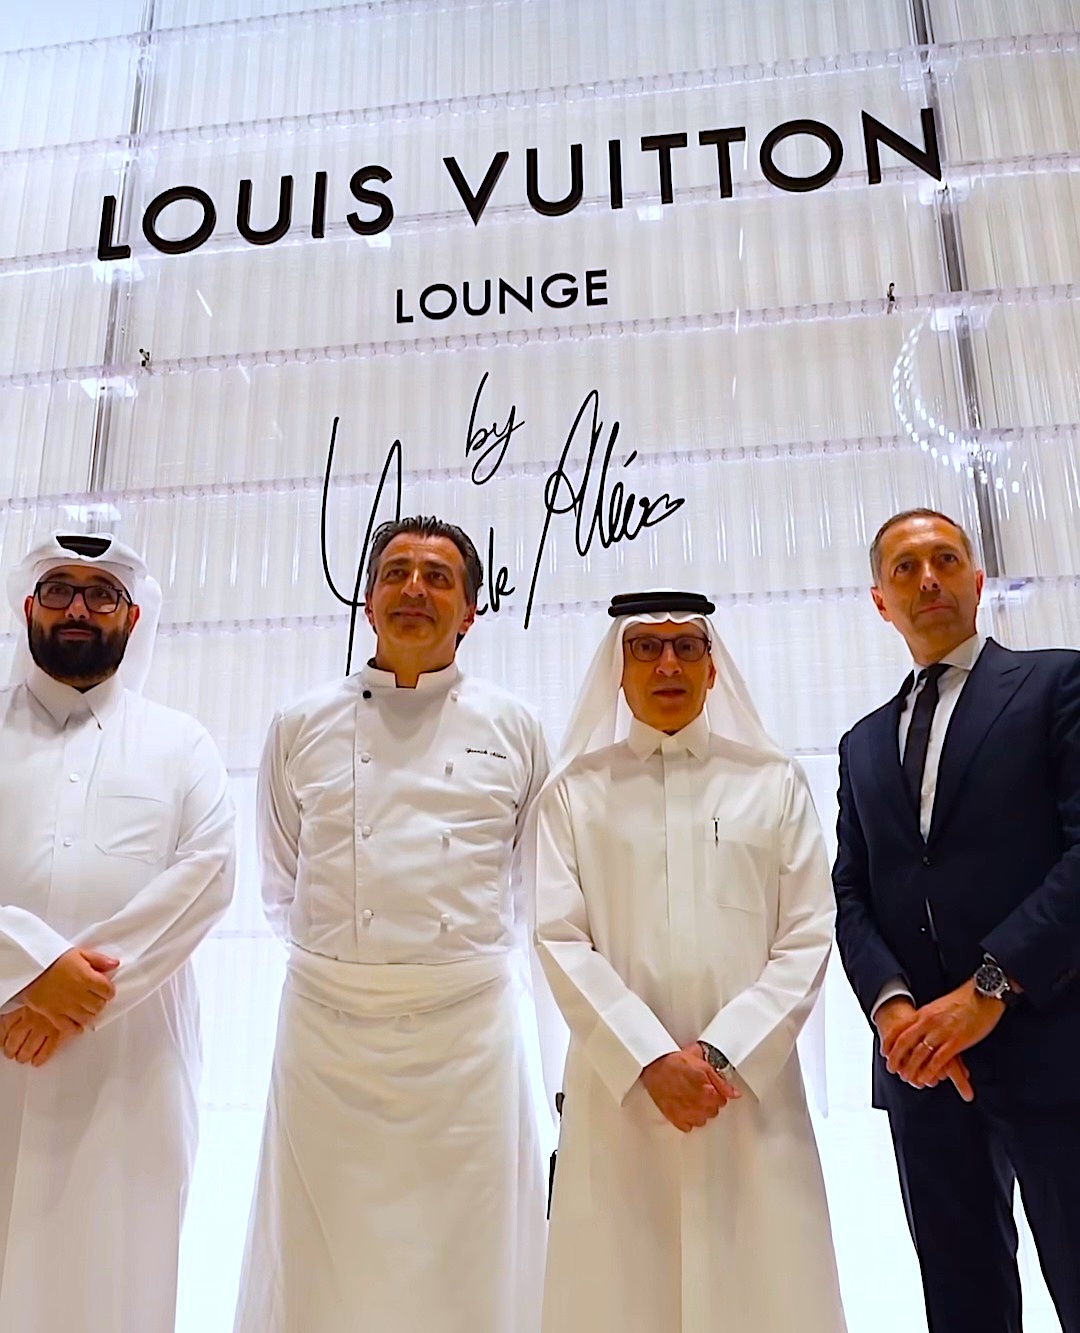 Liste Des Magasins Louis Vuitton En France